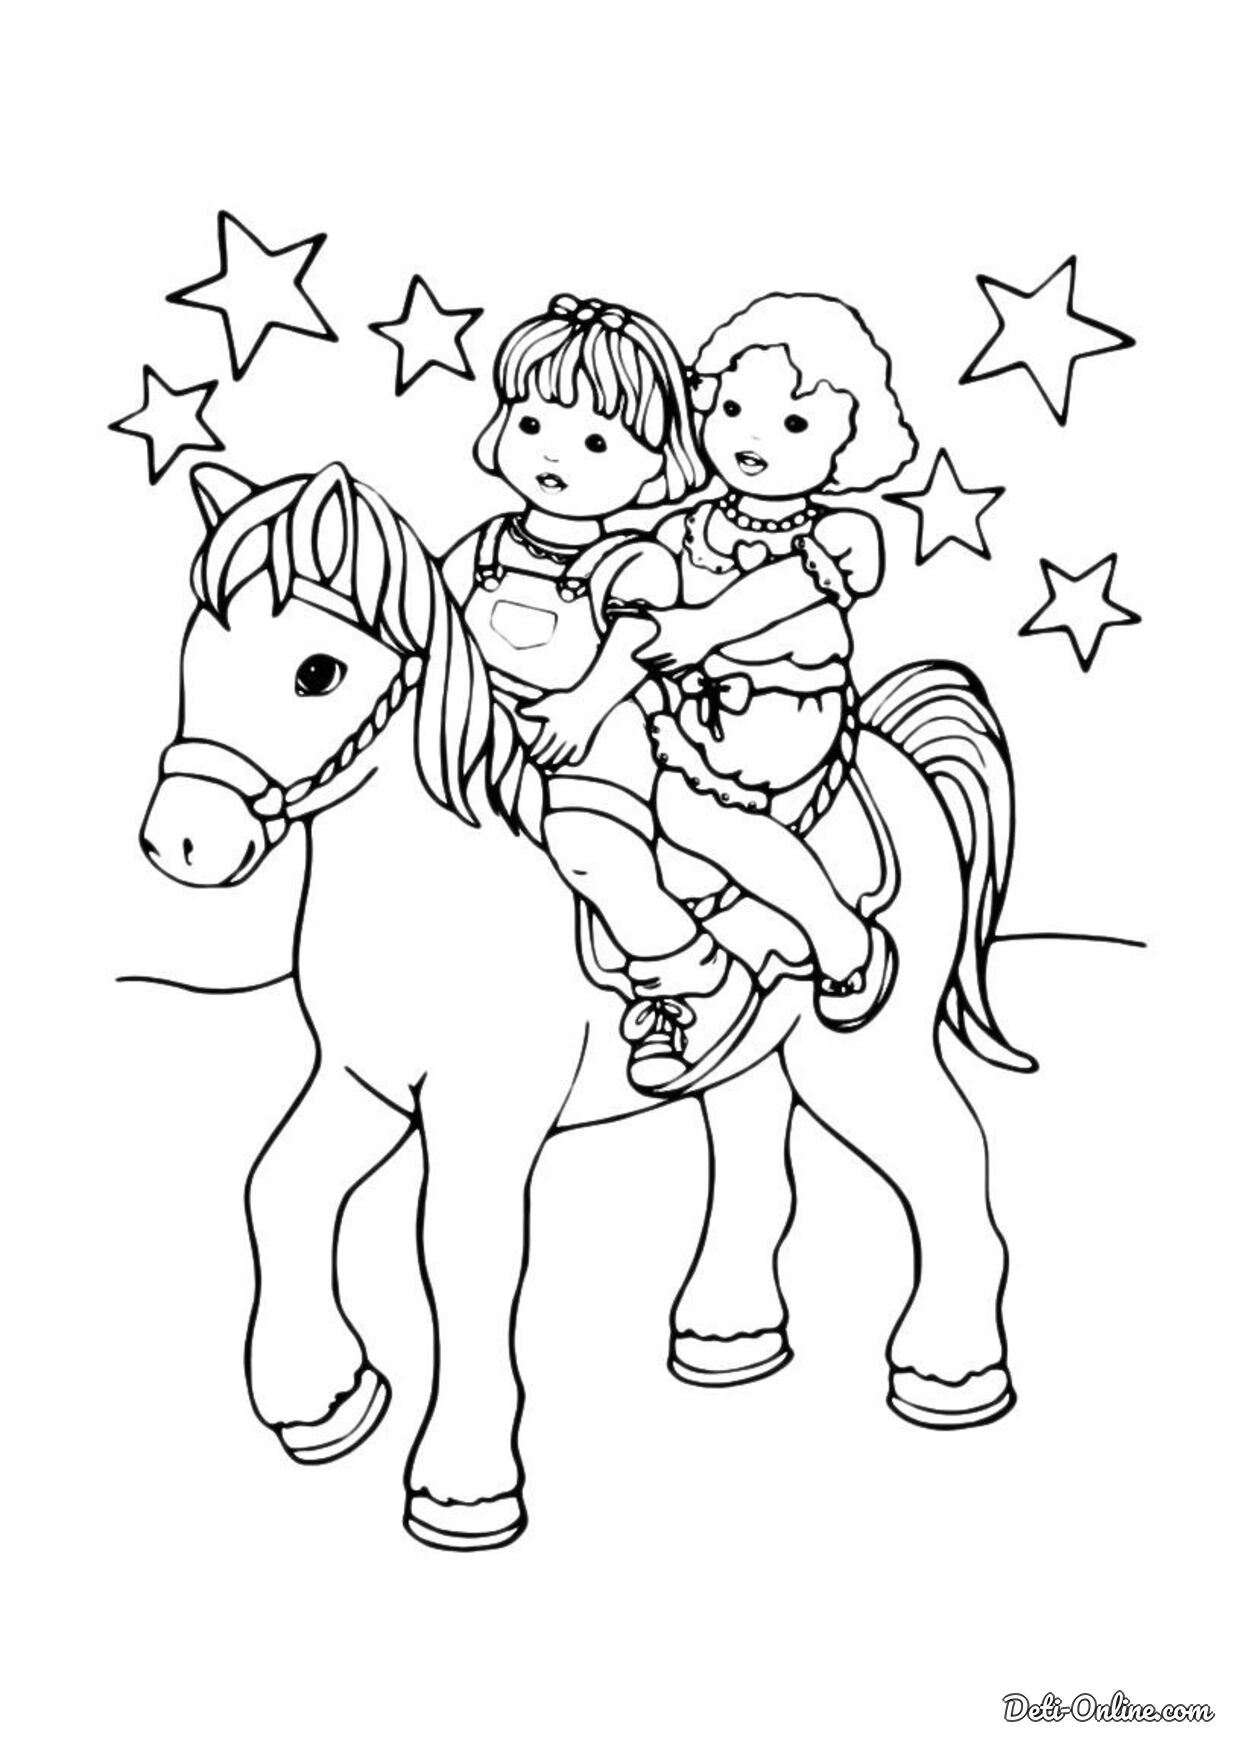 Раскрашиваем лошадку. Раскраска. Лошадка. Раскраски лошадки для девочек. Лошадка раскраска для малышей. Лошадь раскраска для детей.